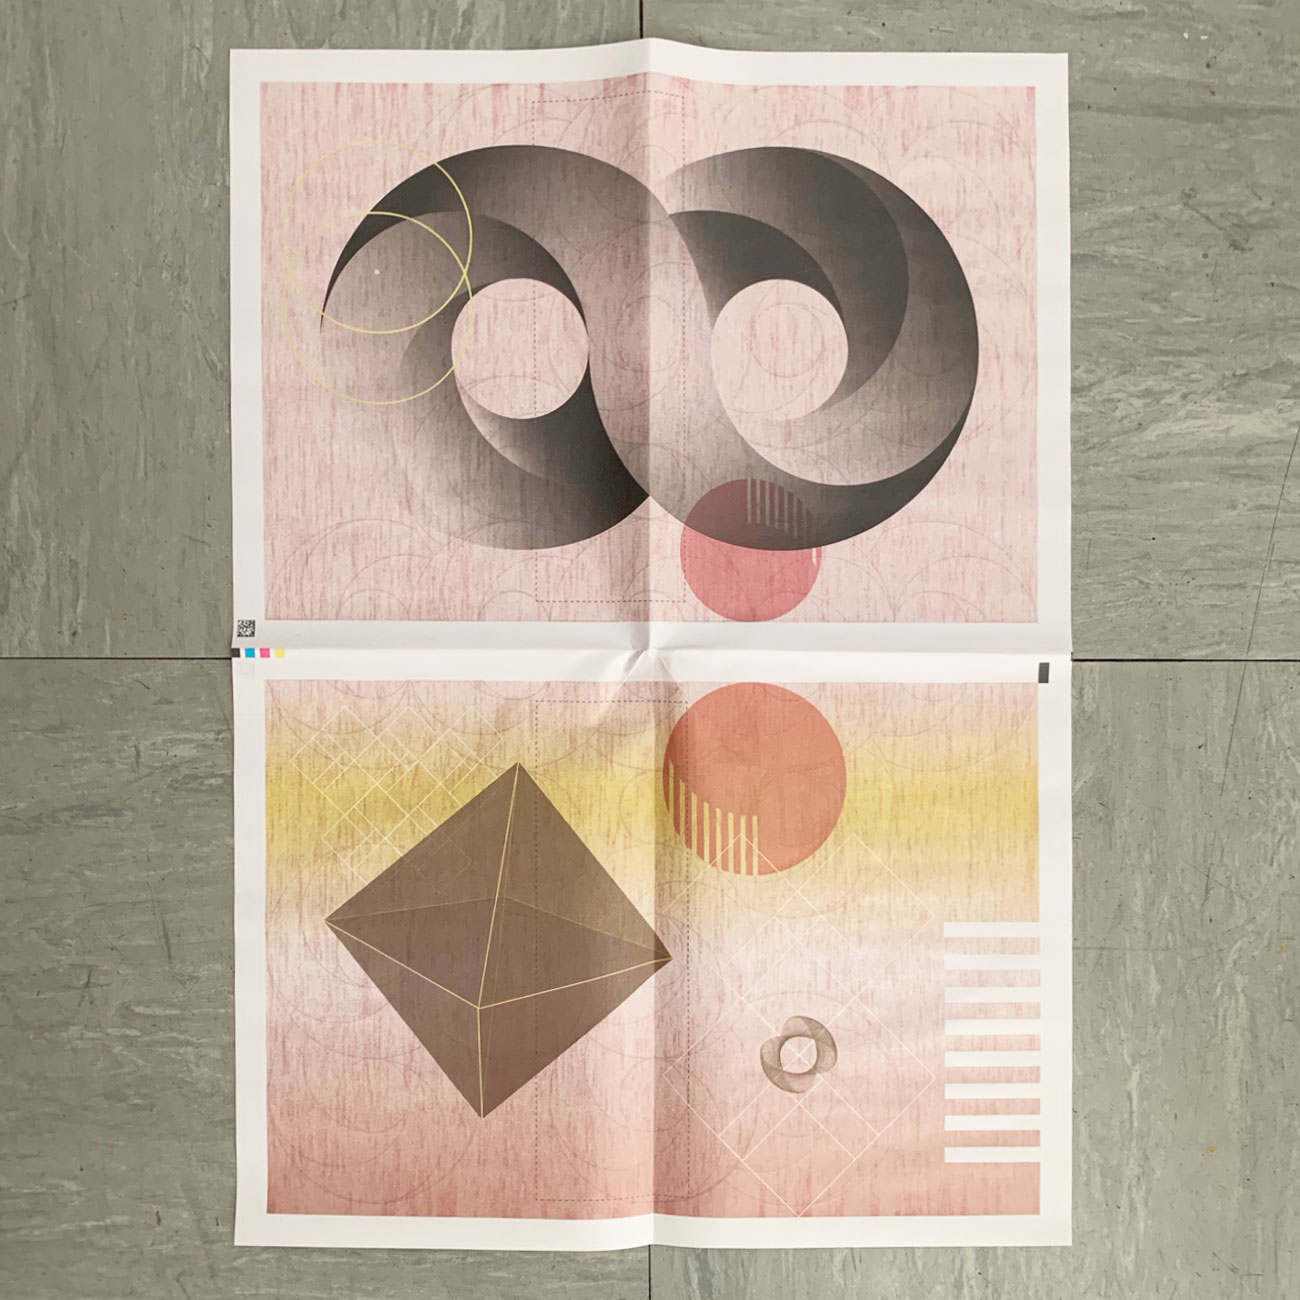 Einpackpapier, acht, Design by Tanja Kischel, Grafik,